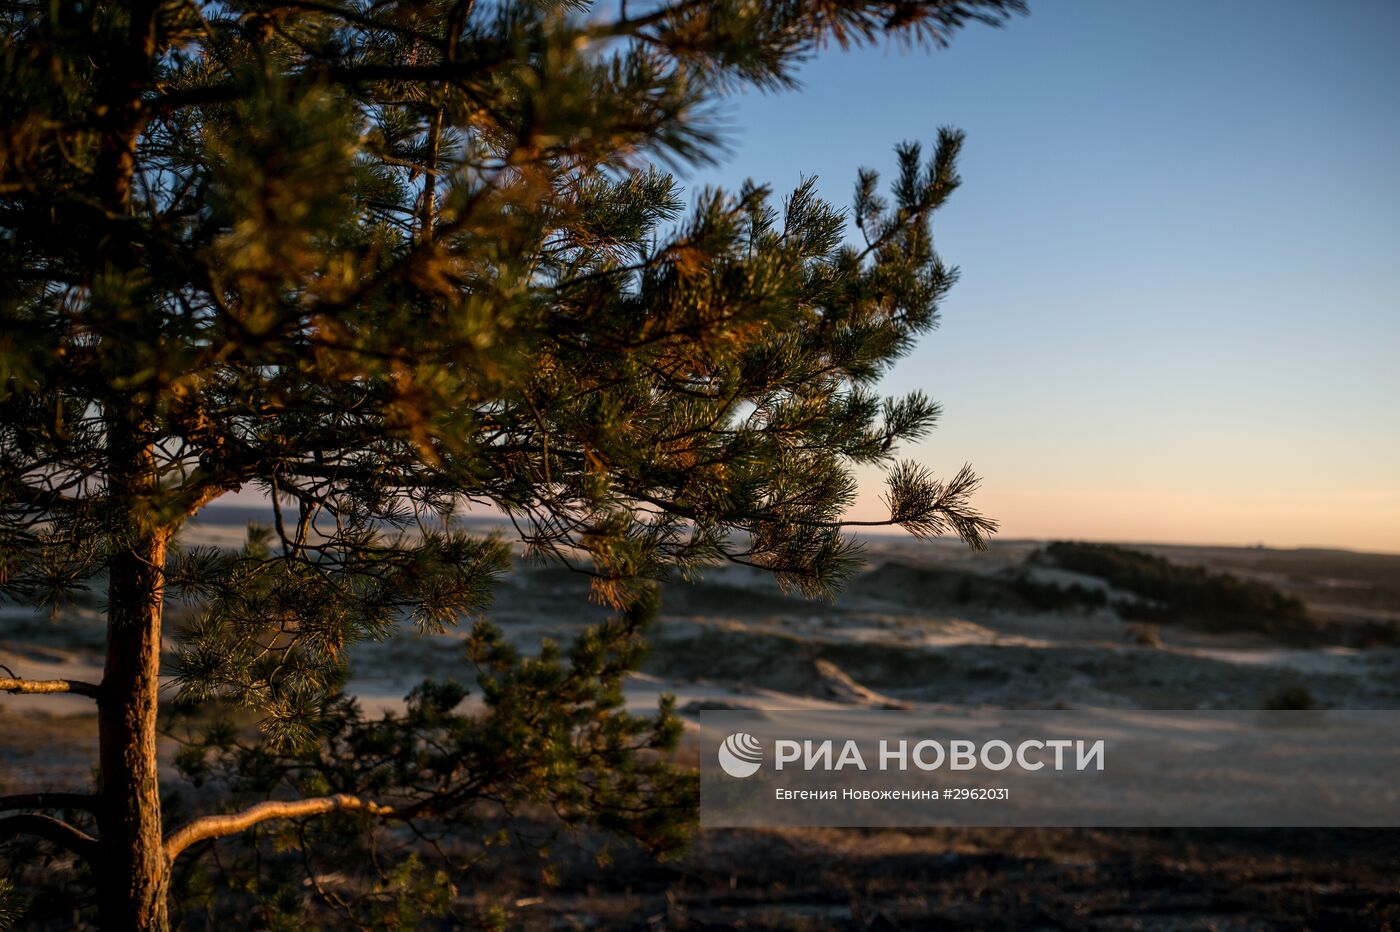 Национальный парк "Куршская коса" в Калининградской области